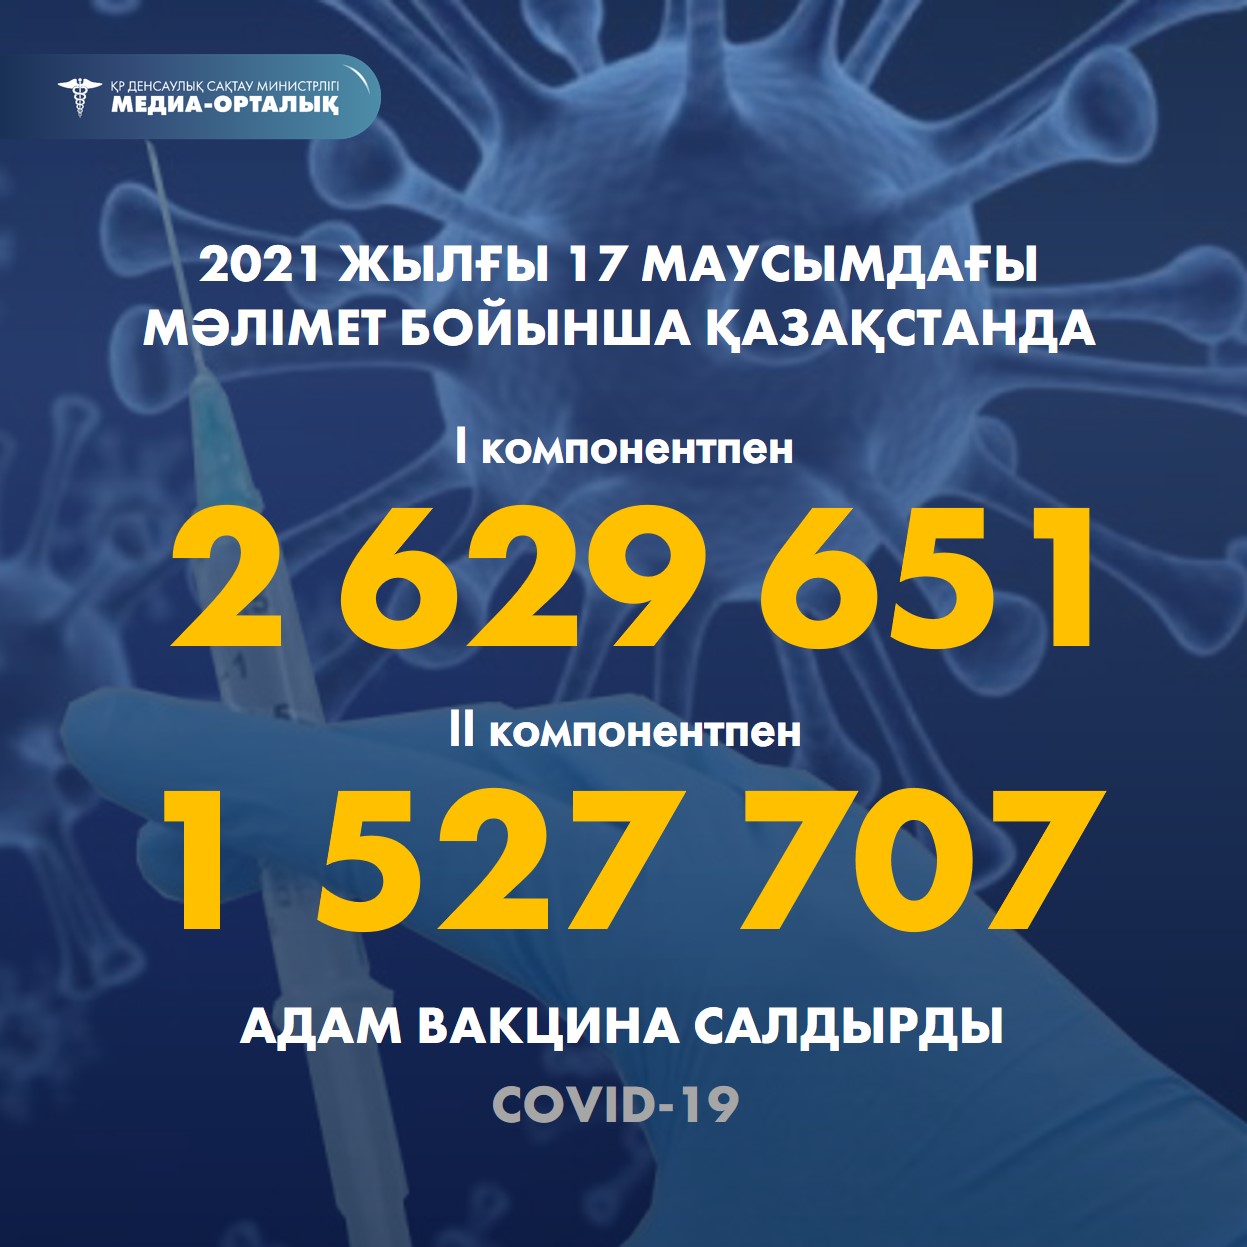 2021 жылғы 17 маусымдағы мәлімет бойынша Қазақстанда I компонентпен 2 629 651 адам вакцина салдырды, II компонентпен 1 527 707 адам.